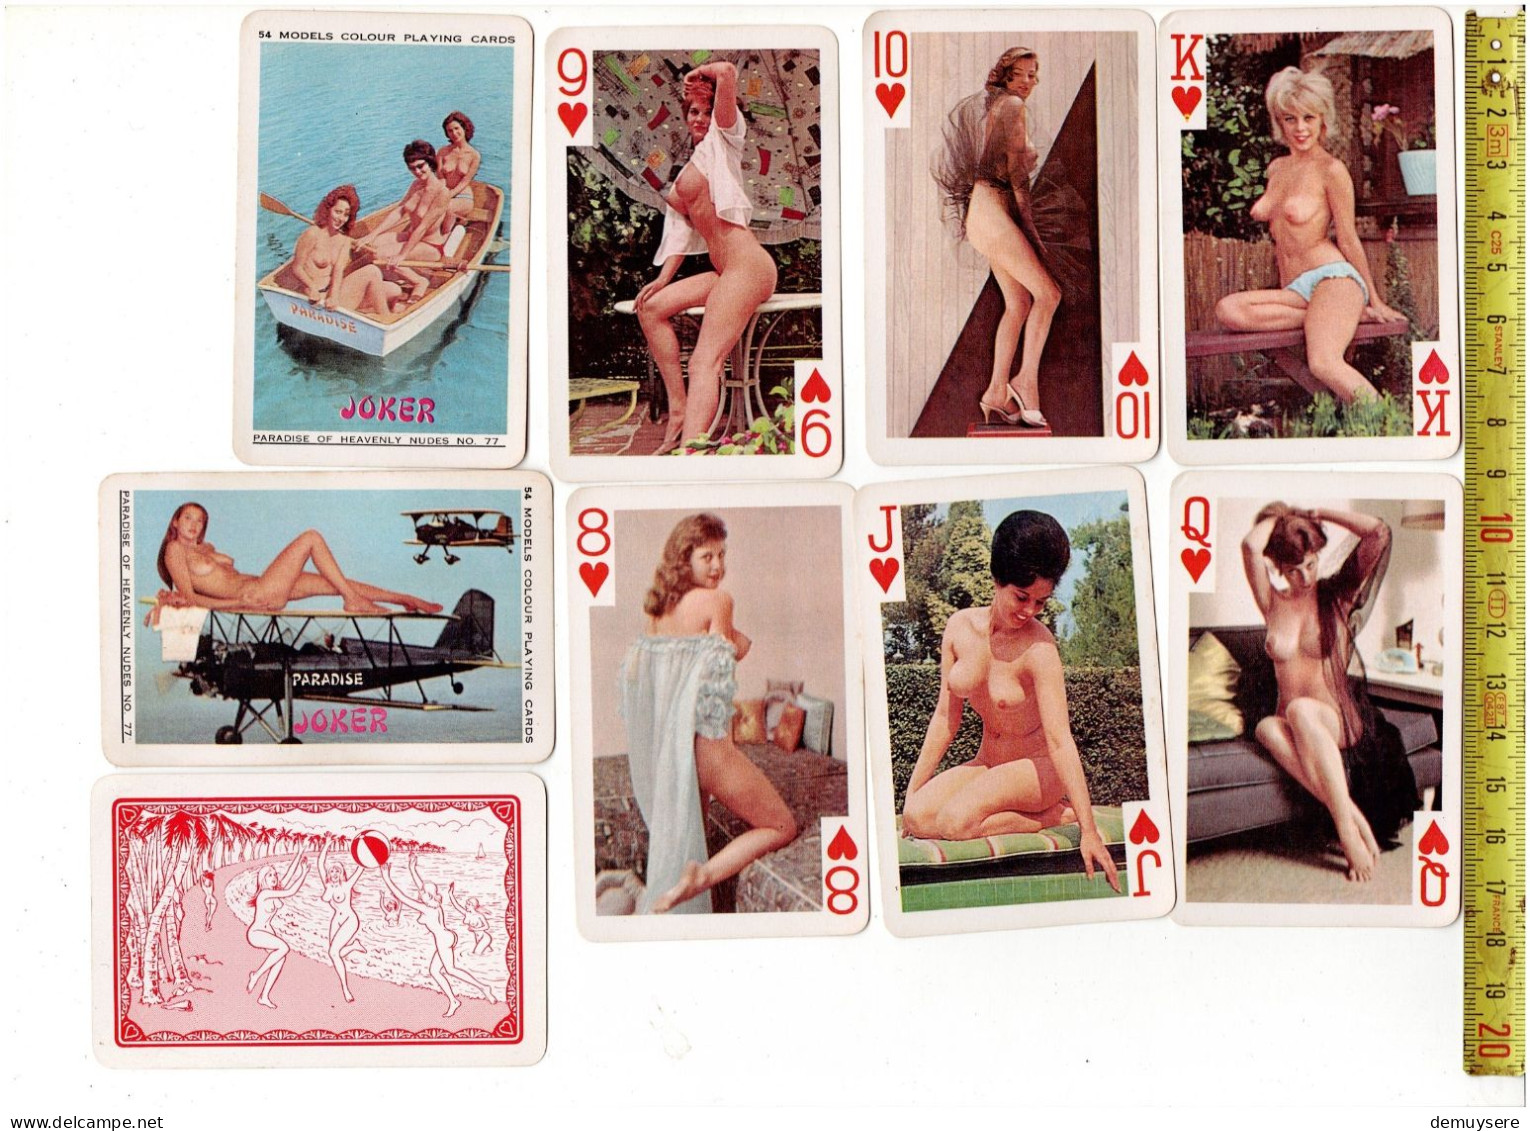 54 MODELS COLOUR PLAYING CARDS - PARADISE OF HEAVENLY NUDES NO 77 - Cartes à Jouer Classiques